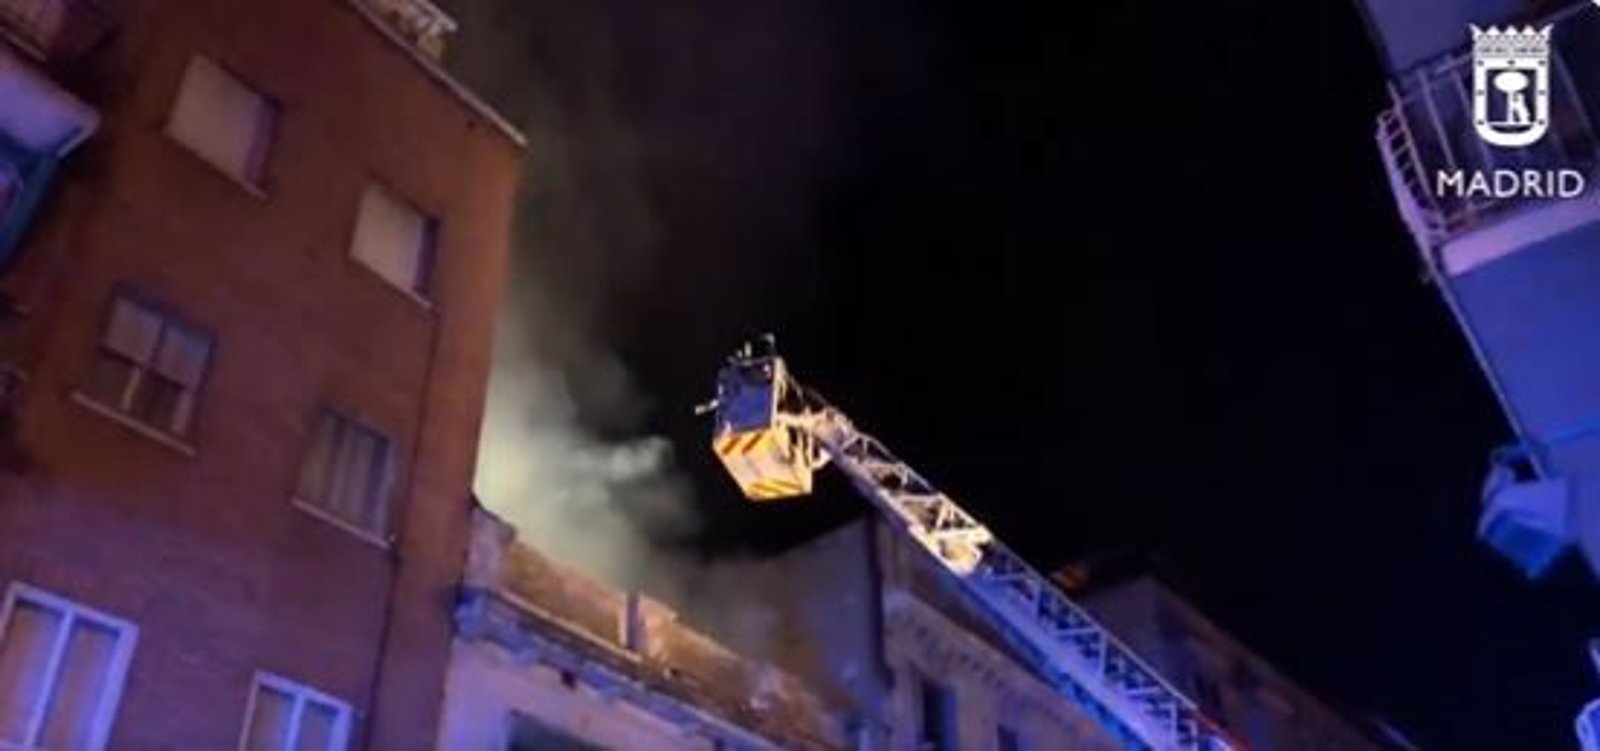 Controlado un incendio en un edificio de Tetuán que deja cuatro personas heridas, una con pronóstico reservado